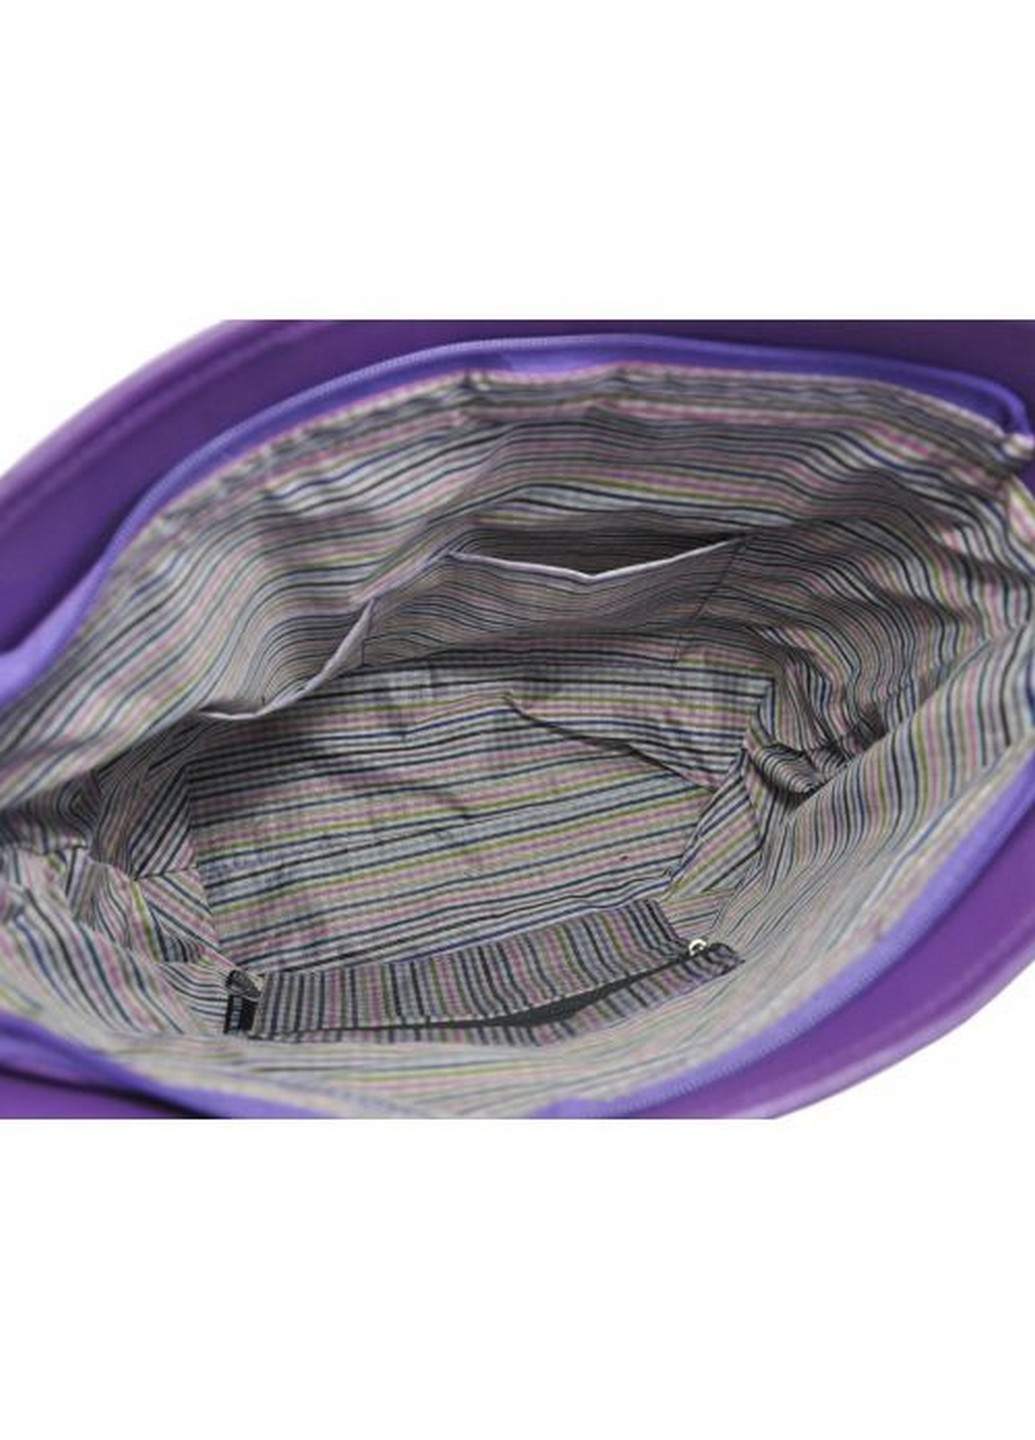 Жіноча сумка сакура фіолетова Presentville (258412948)